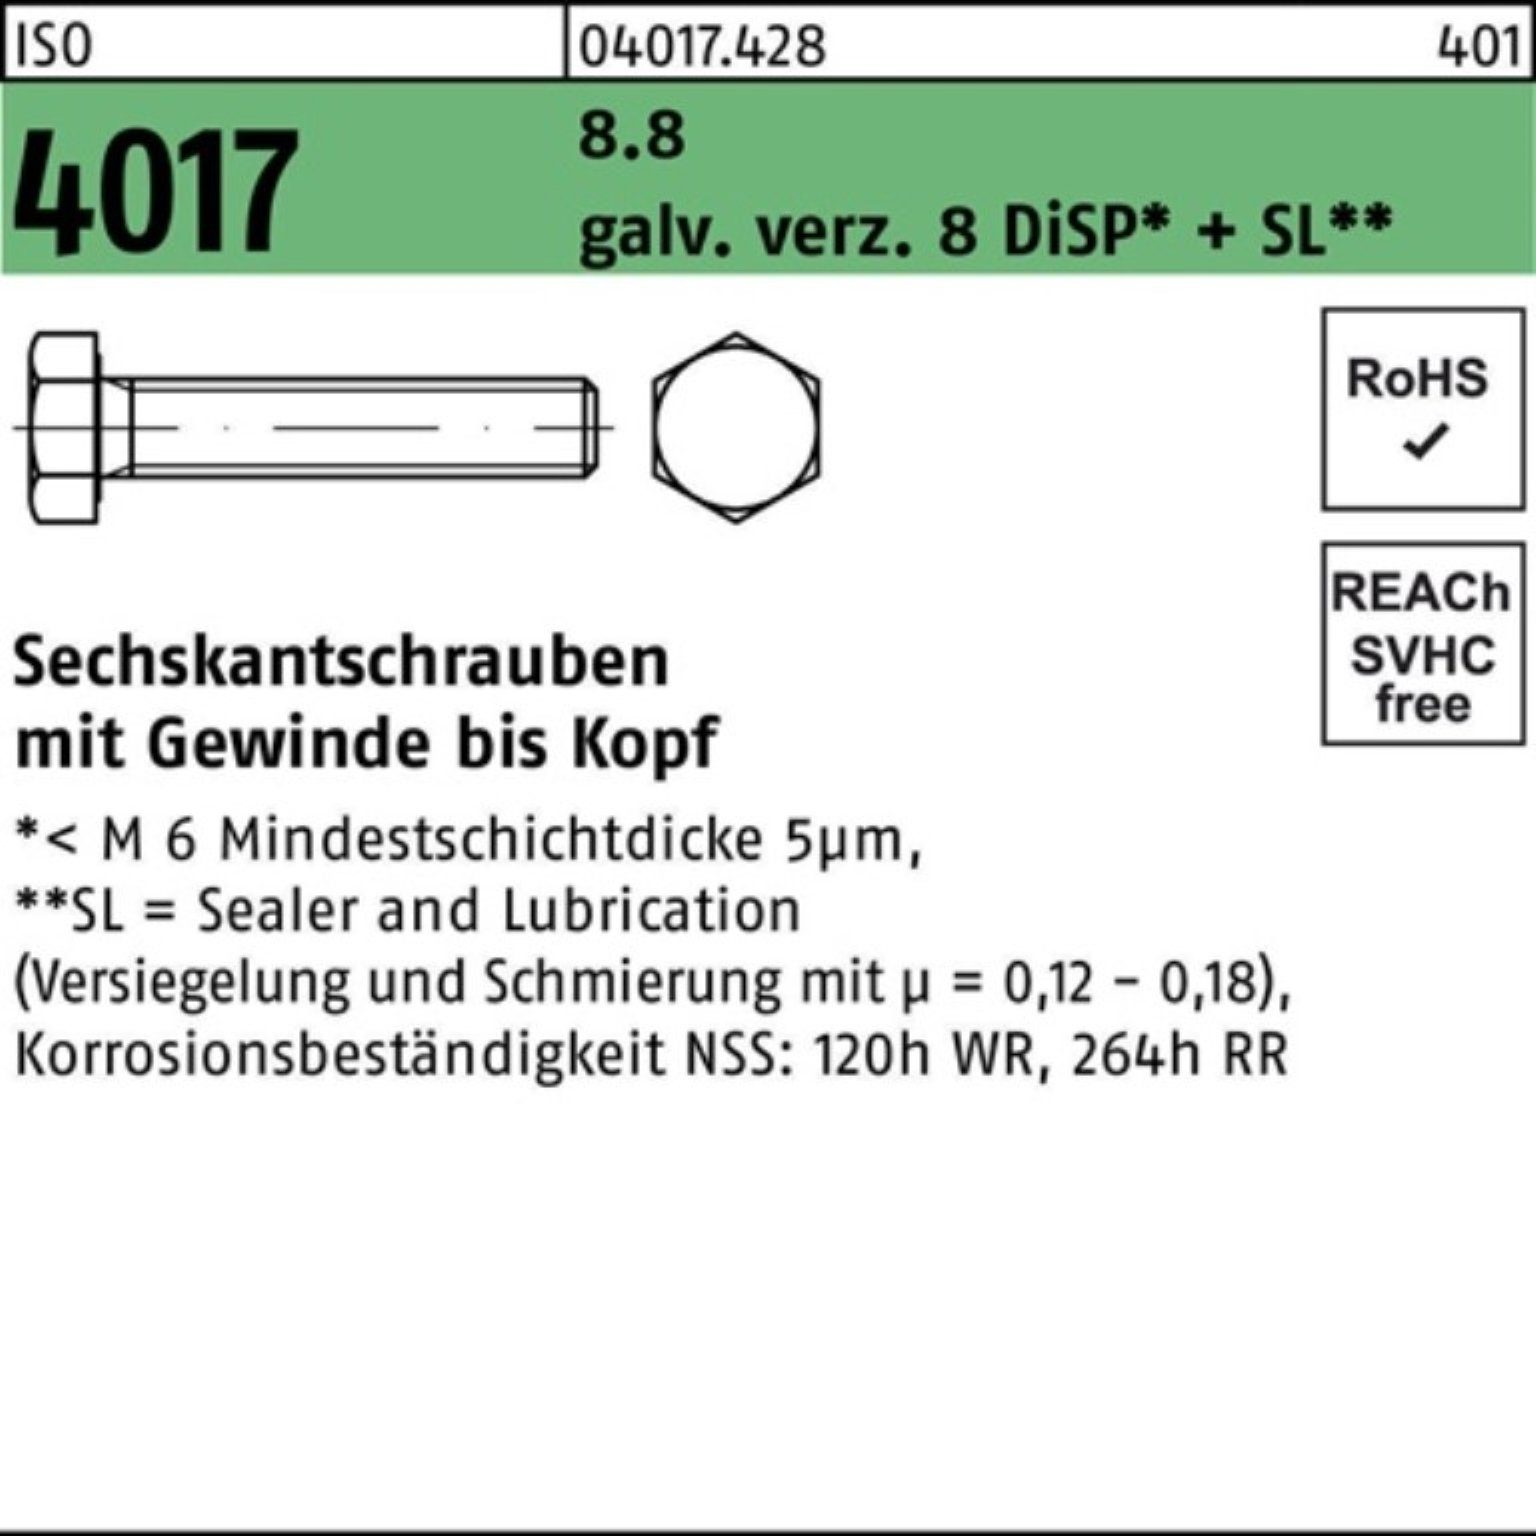 Bufab Sechskantschraube 100er Pack Sechskantschraube ISO 4017 VG M16x 35 8.8 galv.verz. 8 DiSP